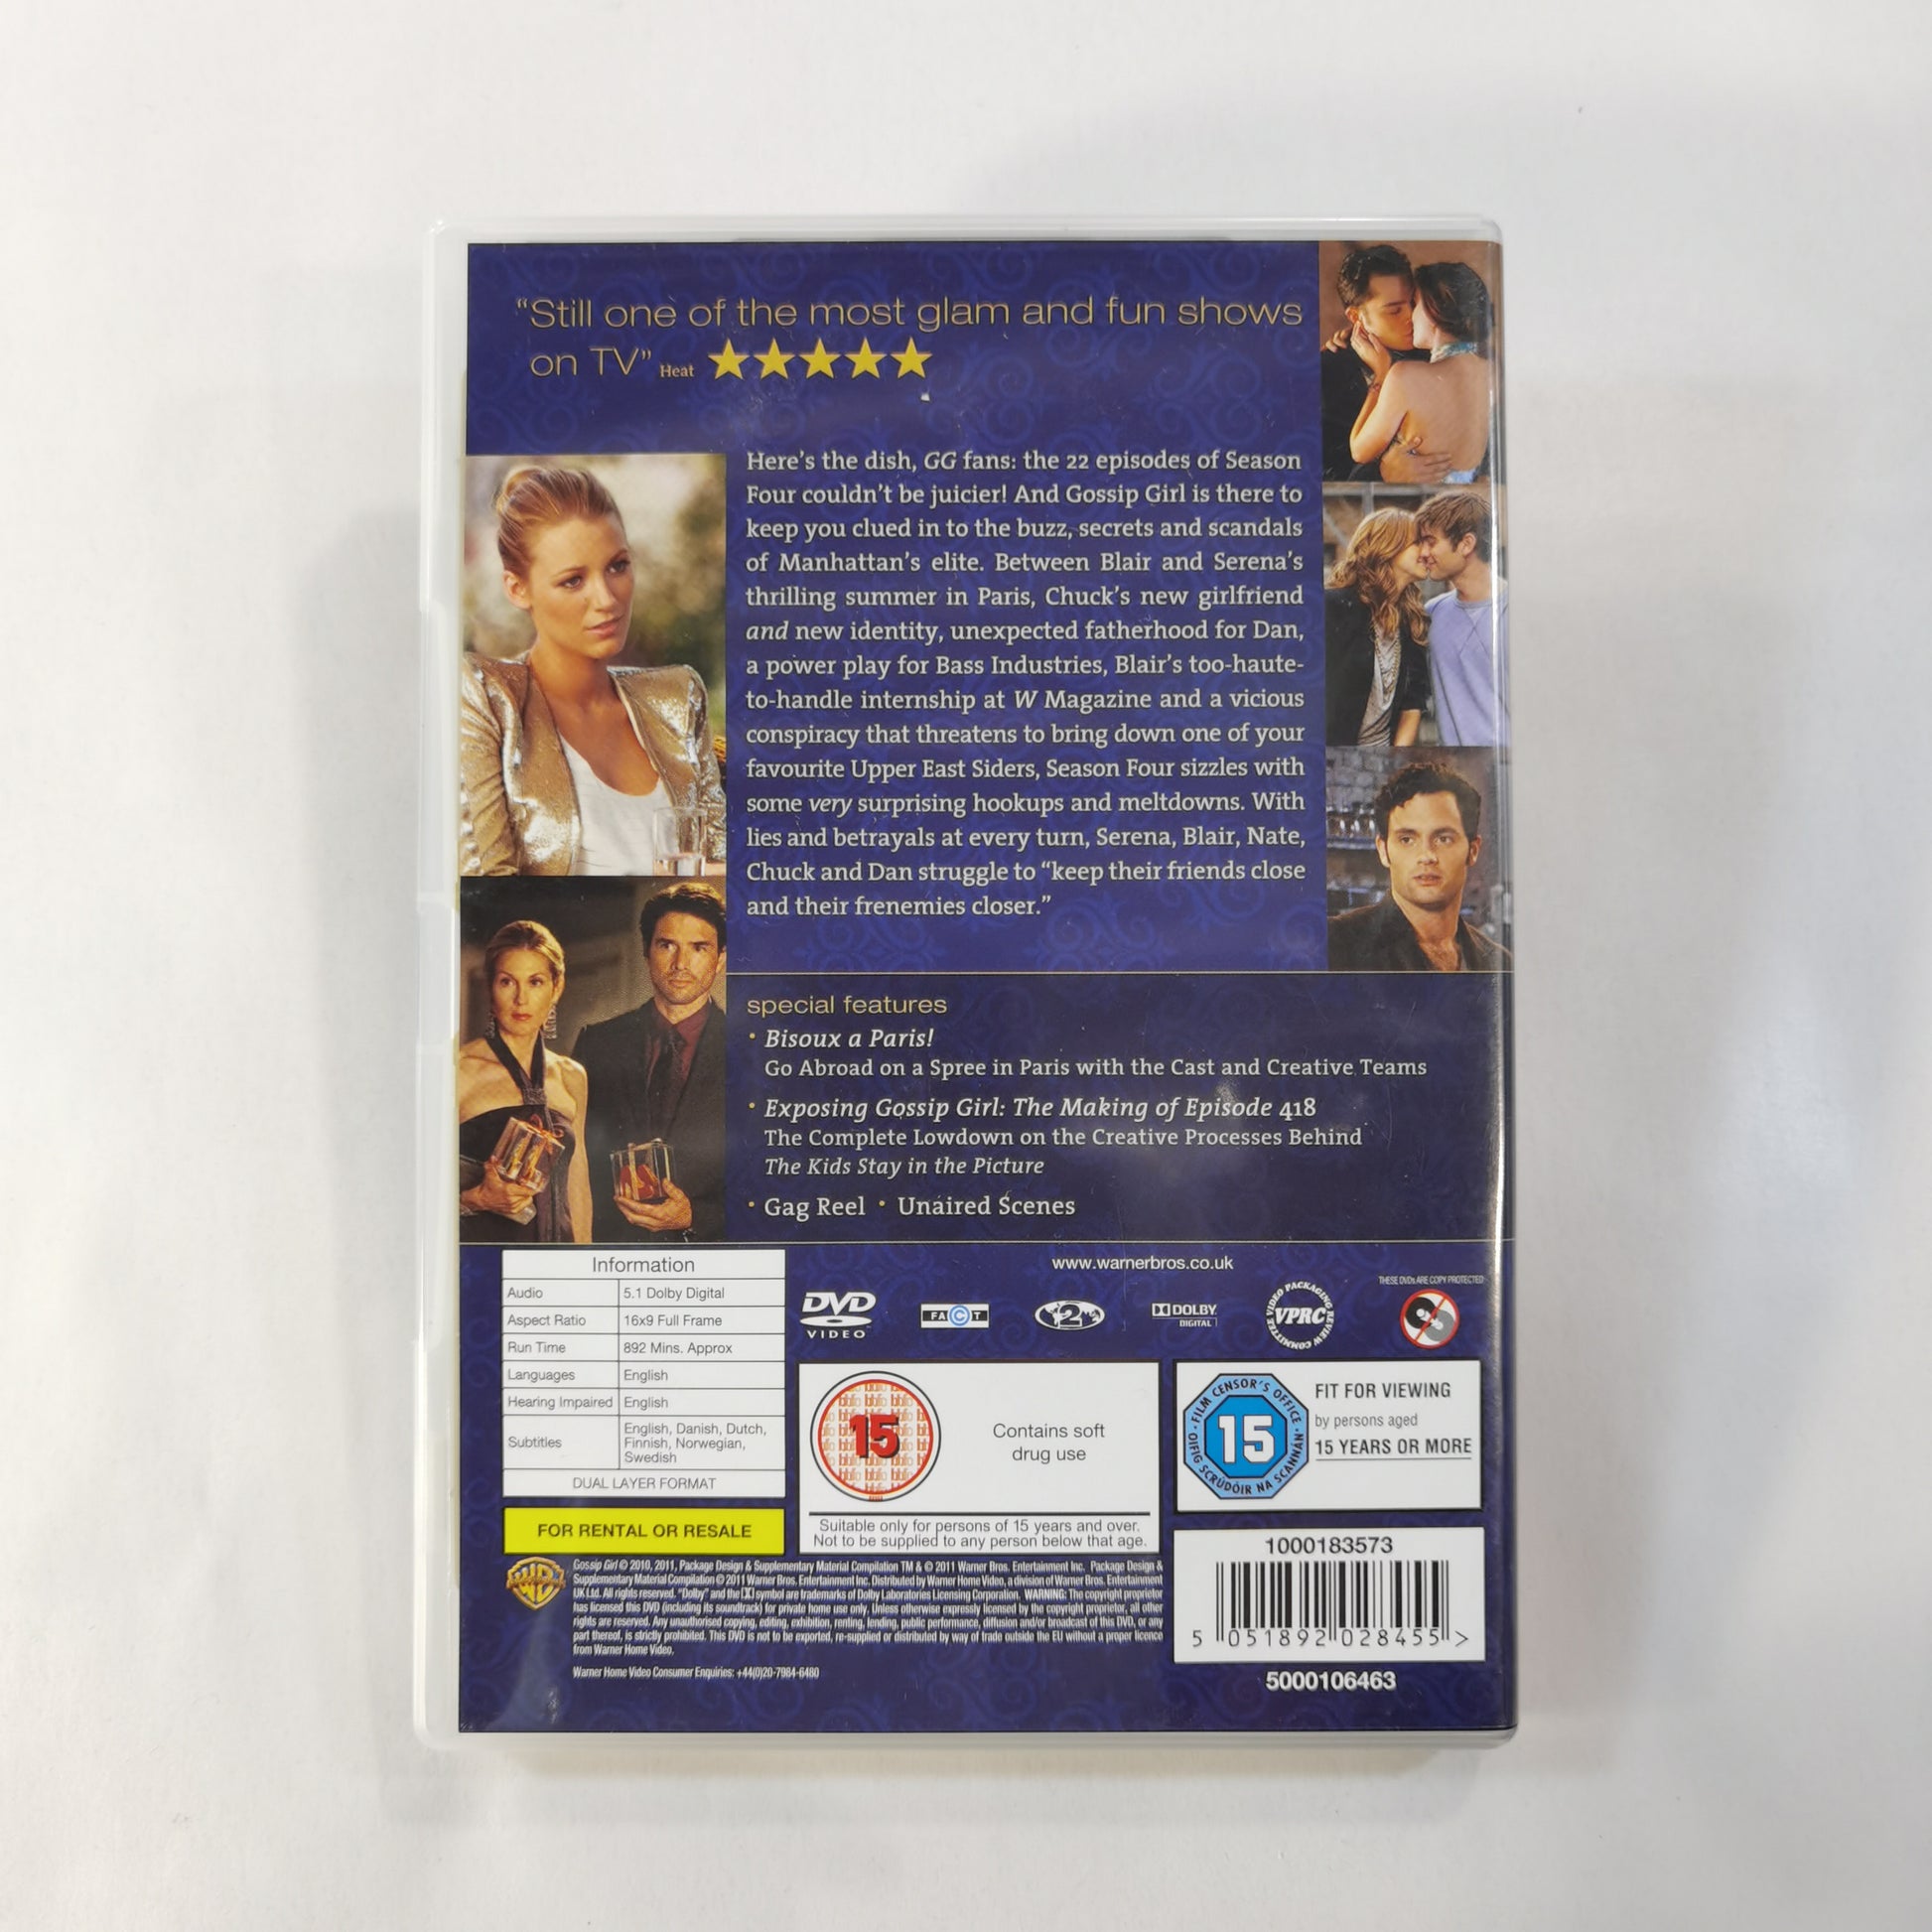 Gossip Girl: Series 1 (2007) - DVD DK 2009 – KobaniStore